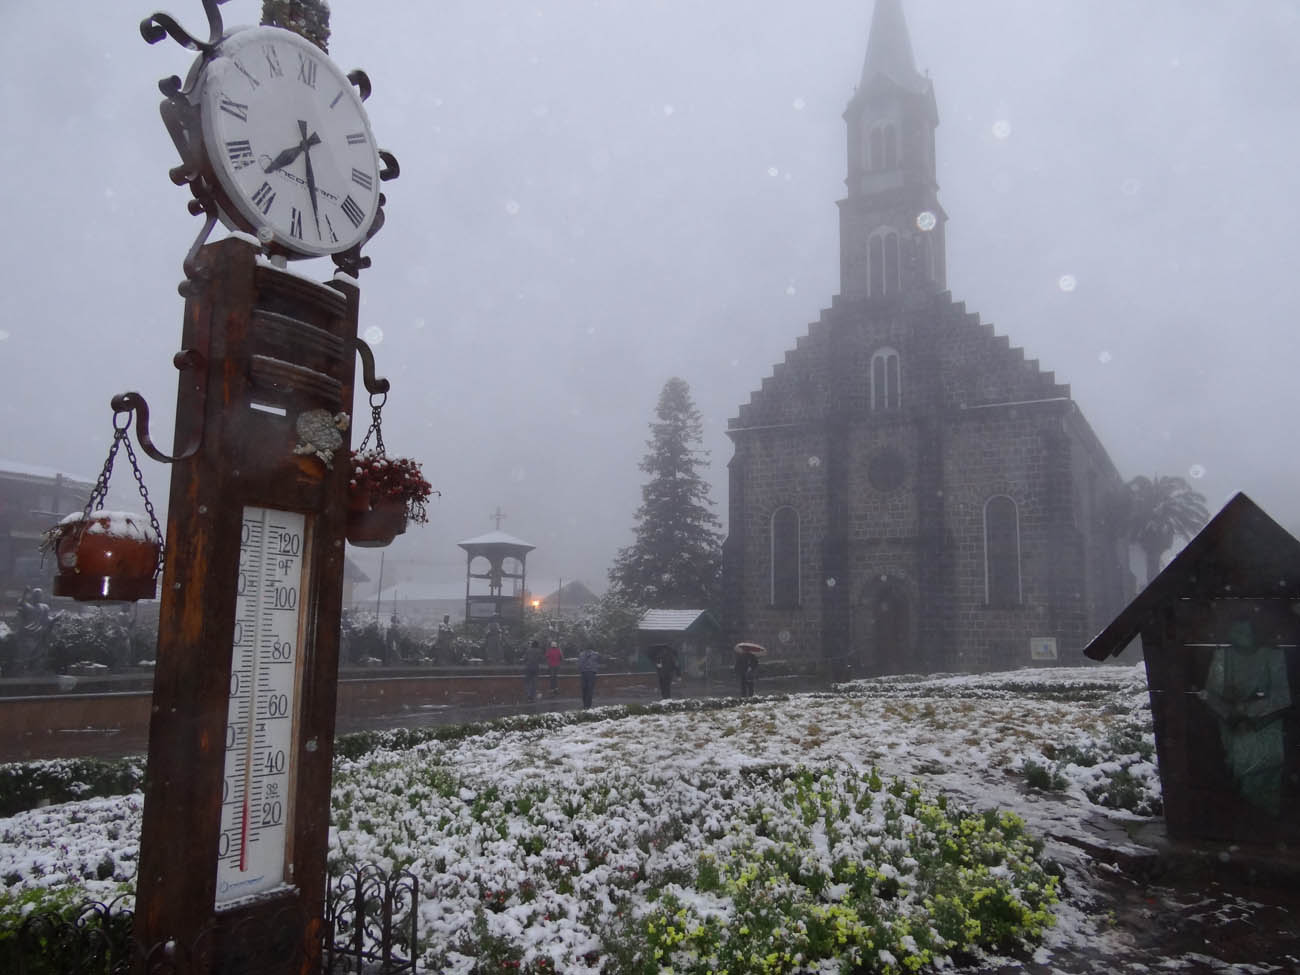 Foto: Neva na Paróquia de São Pedro em Gramado durante o inverno em 2013